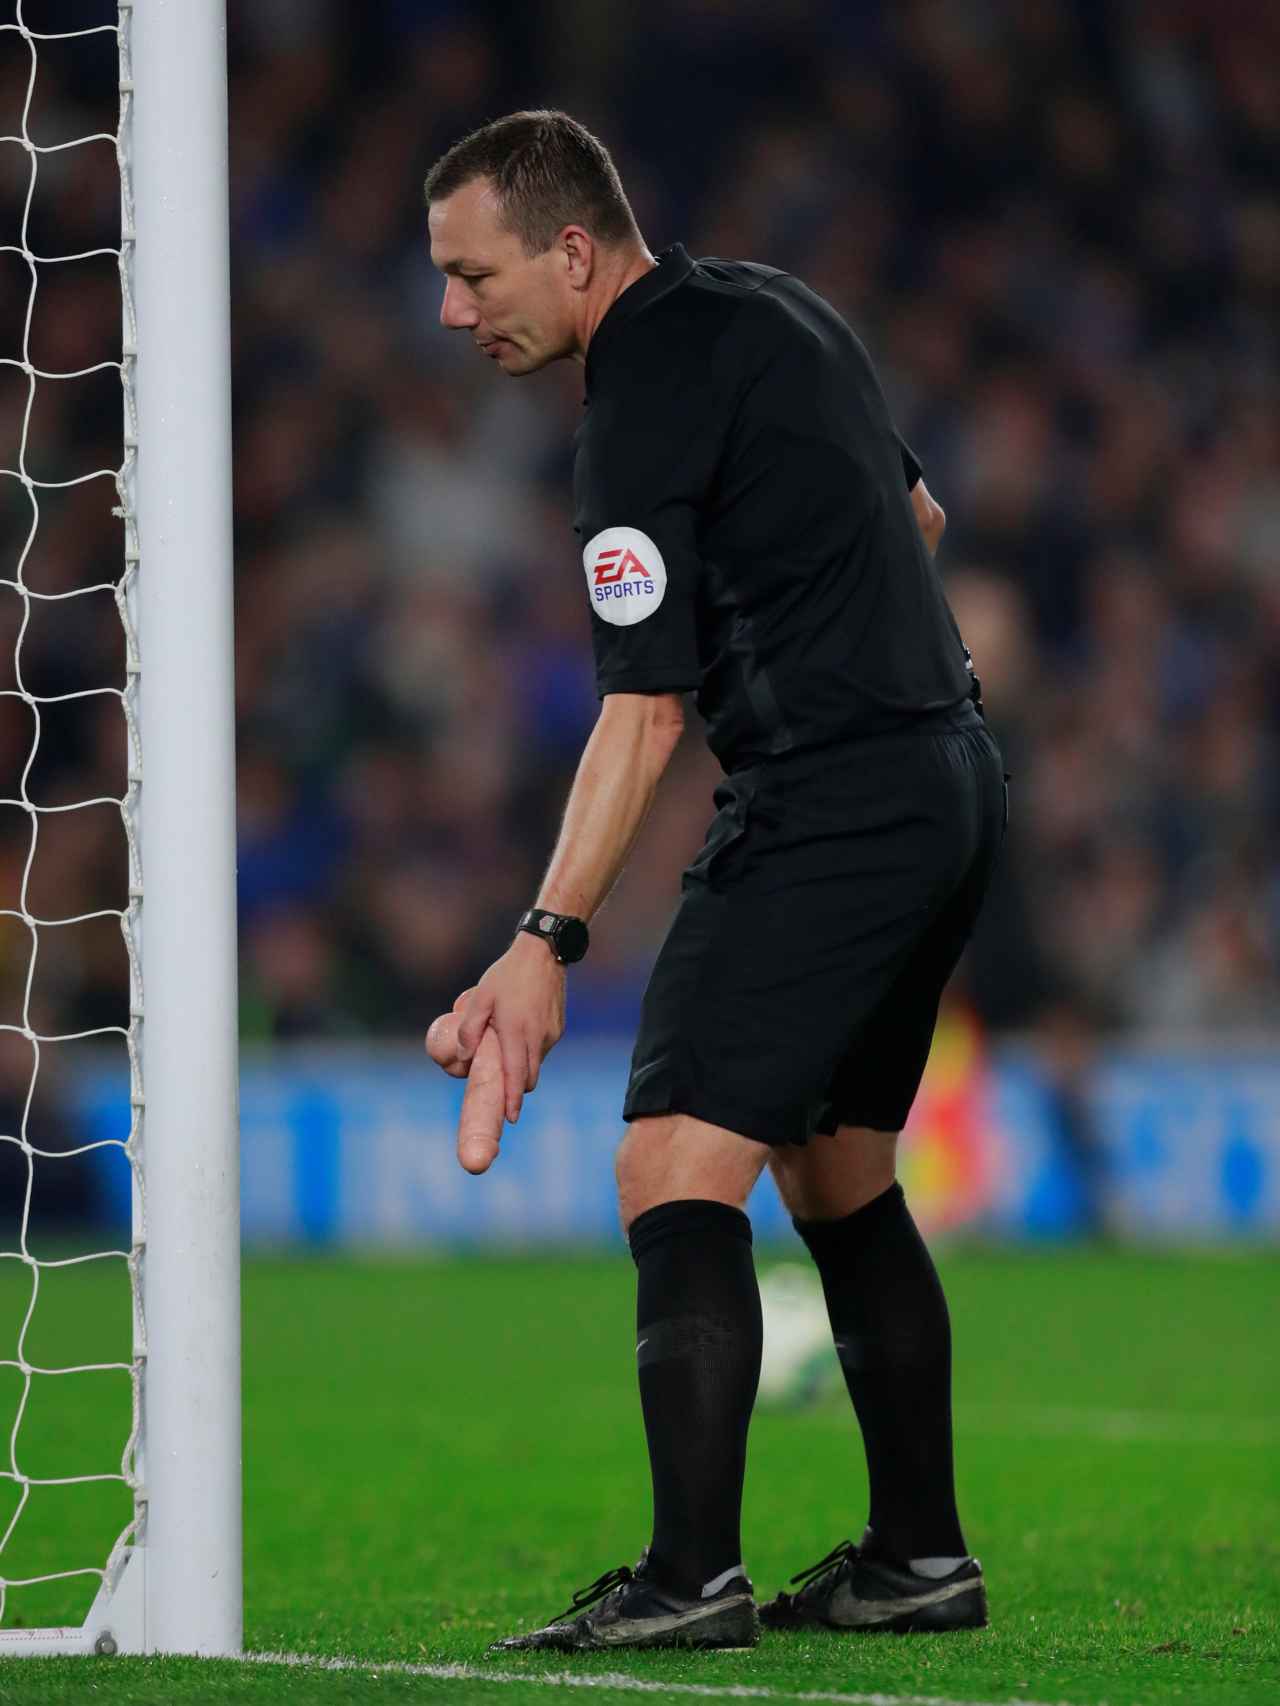 El árbitro del Brighton - West Ham recoge un pene de goma lanzado al campo